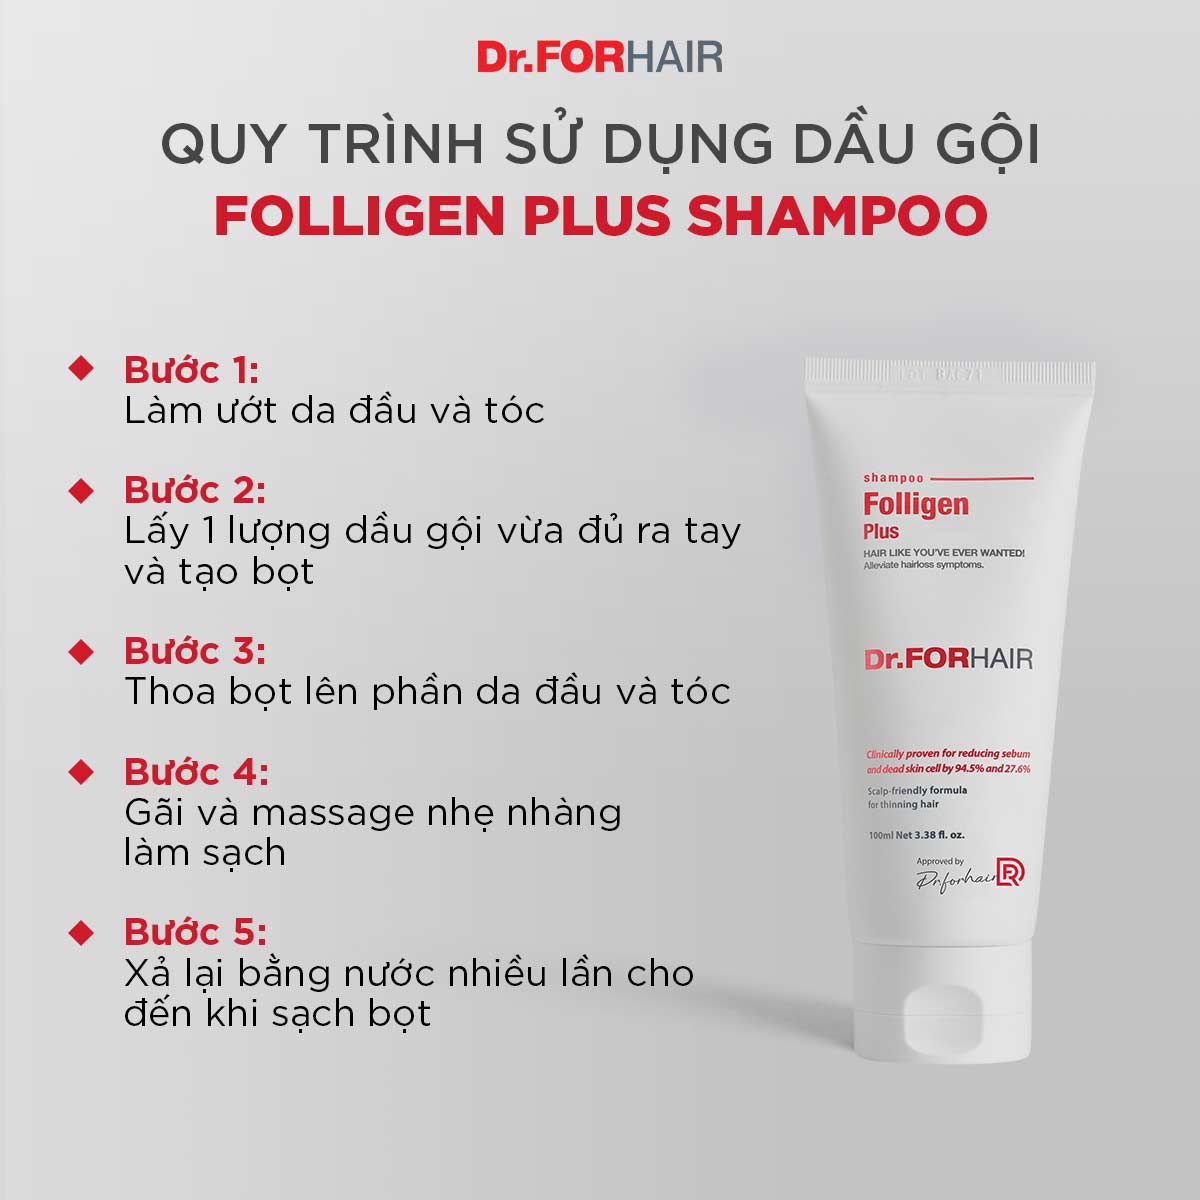 Dầu gội đầu ngăn rụng tóc kích thích mọc tóc Dr.FORHAIR Folligen Plus Shampoo 100ml